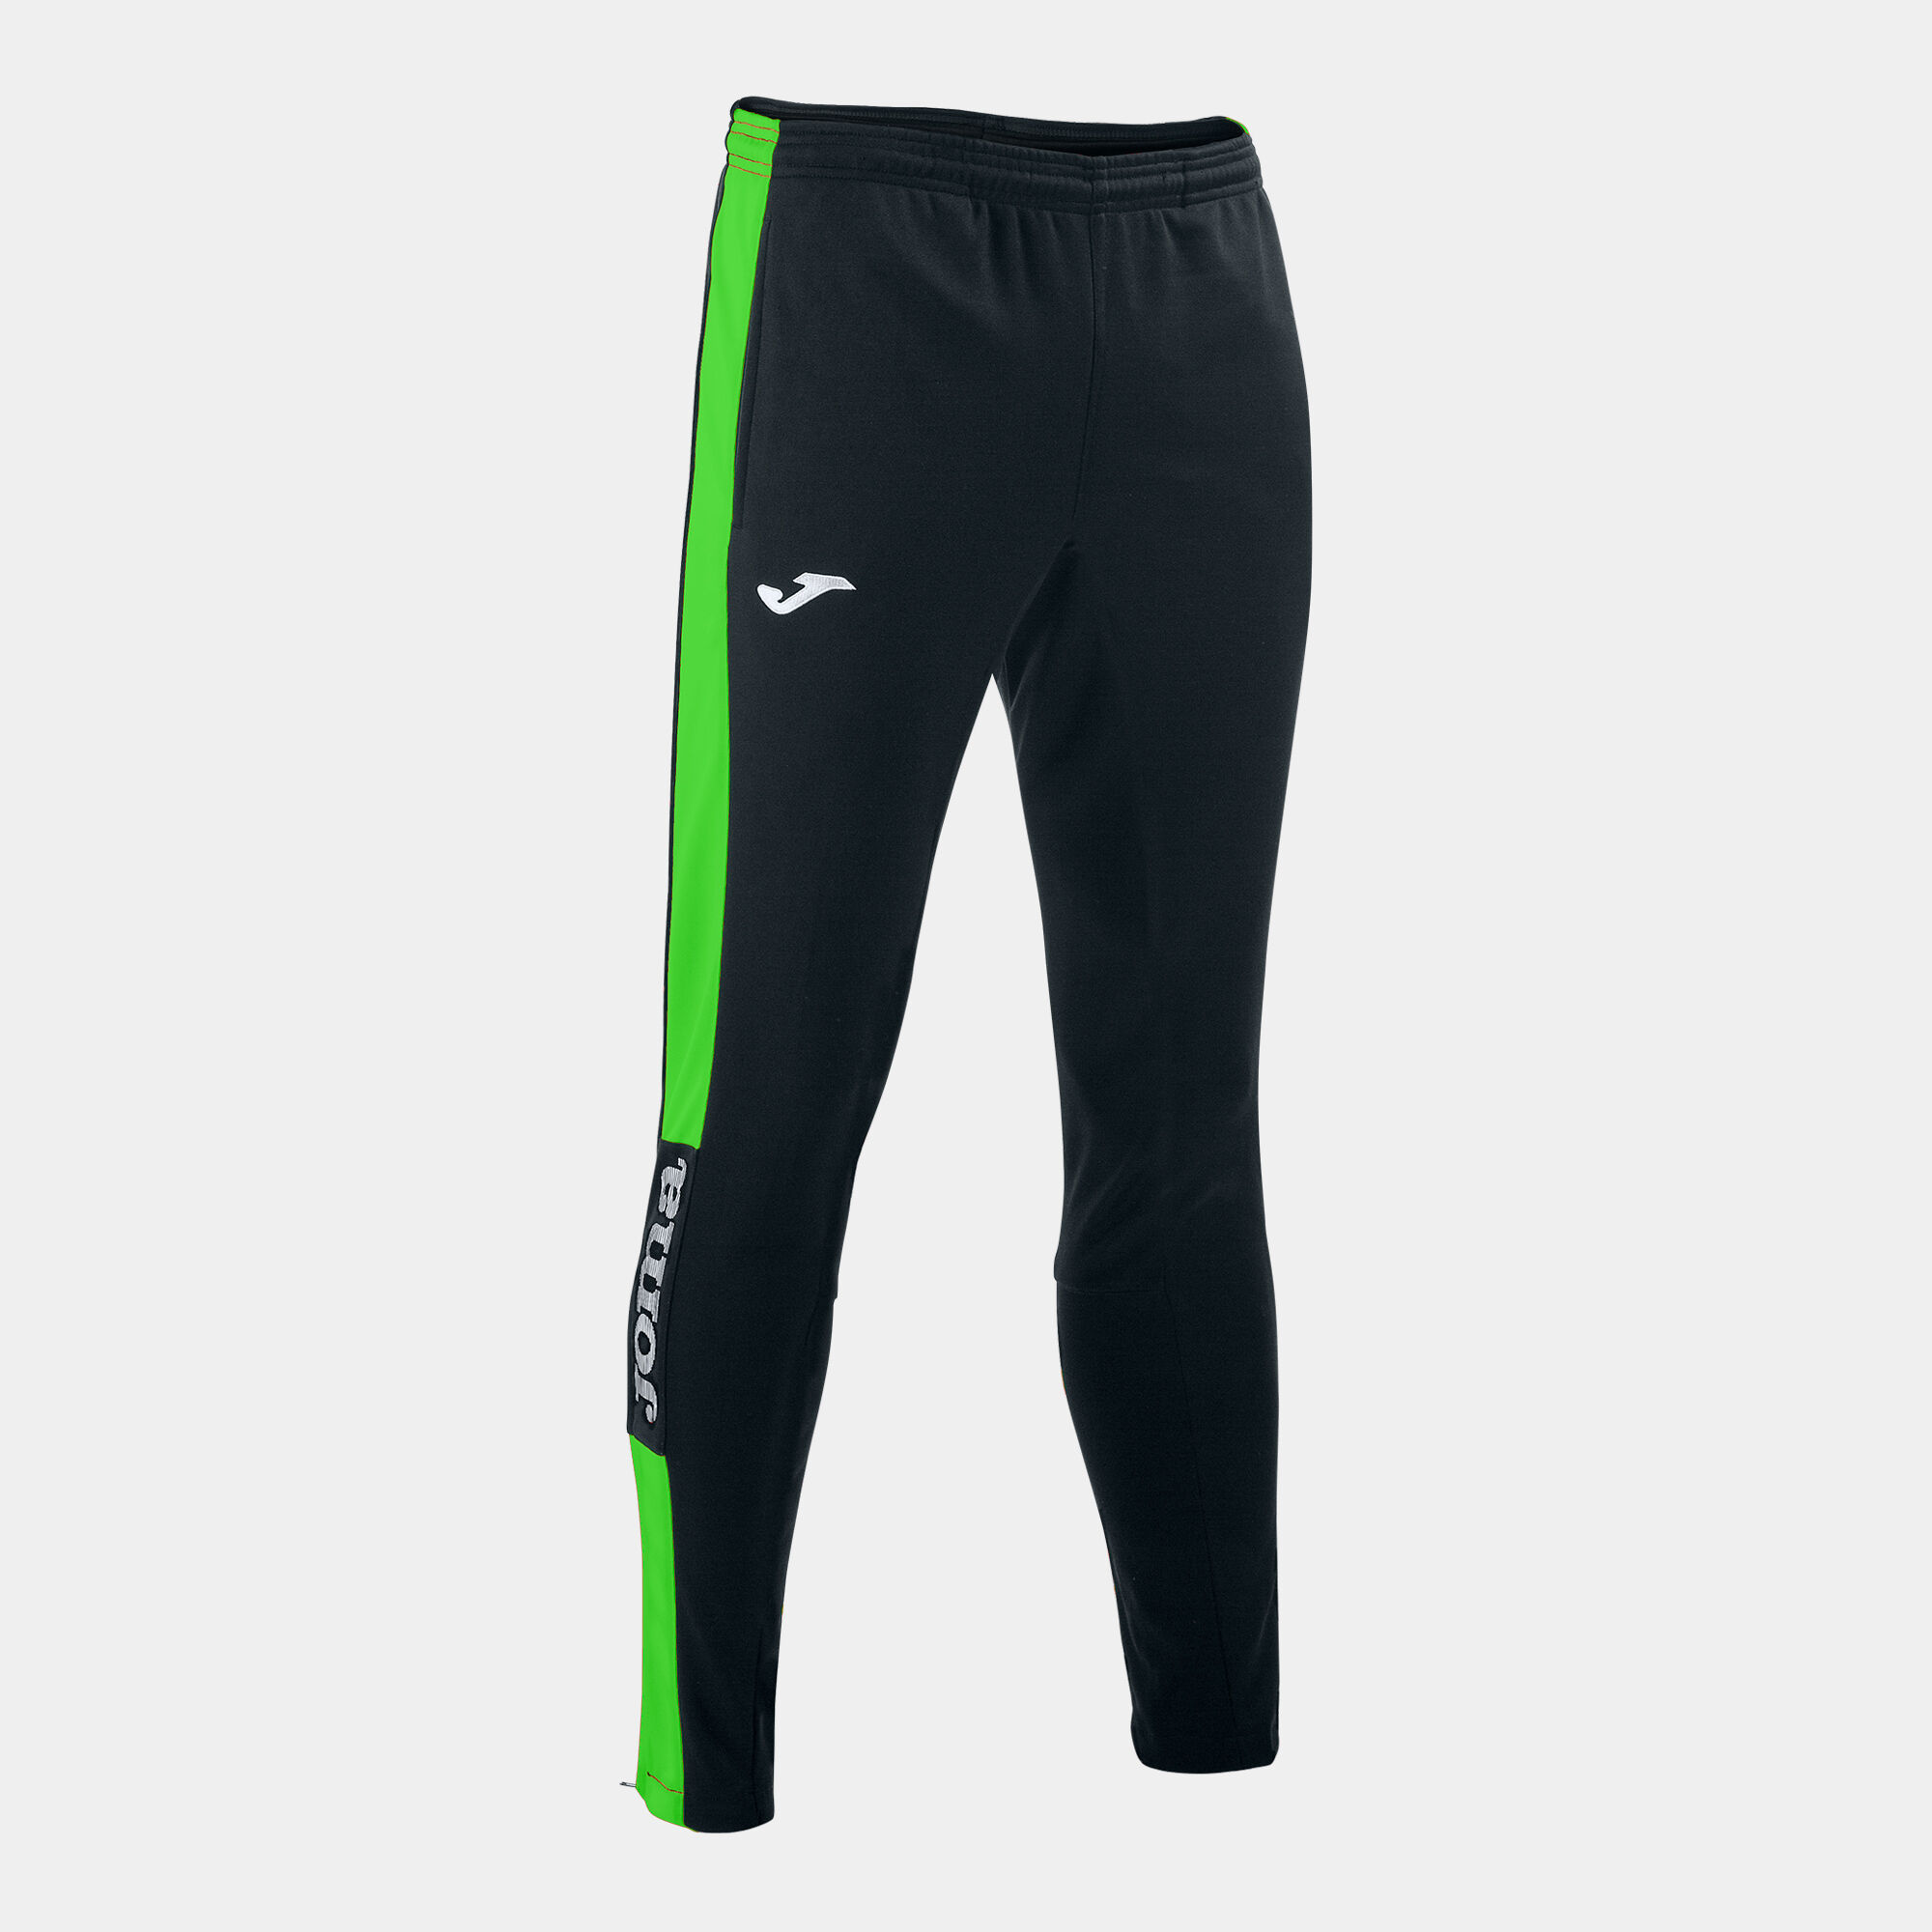 Pantalone lungo uomo Championship IV nero verde fluorescente